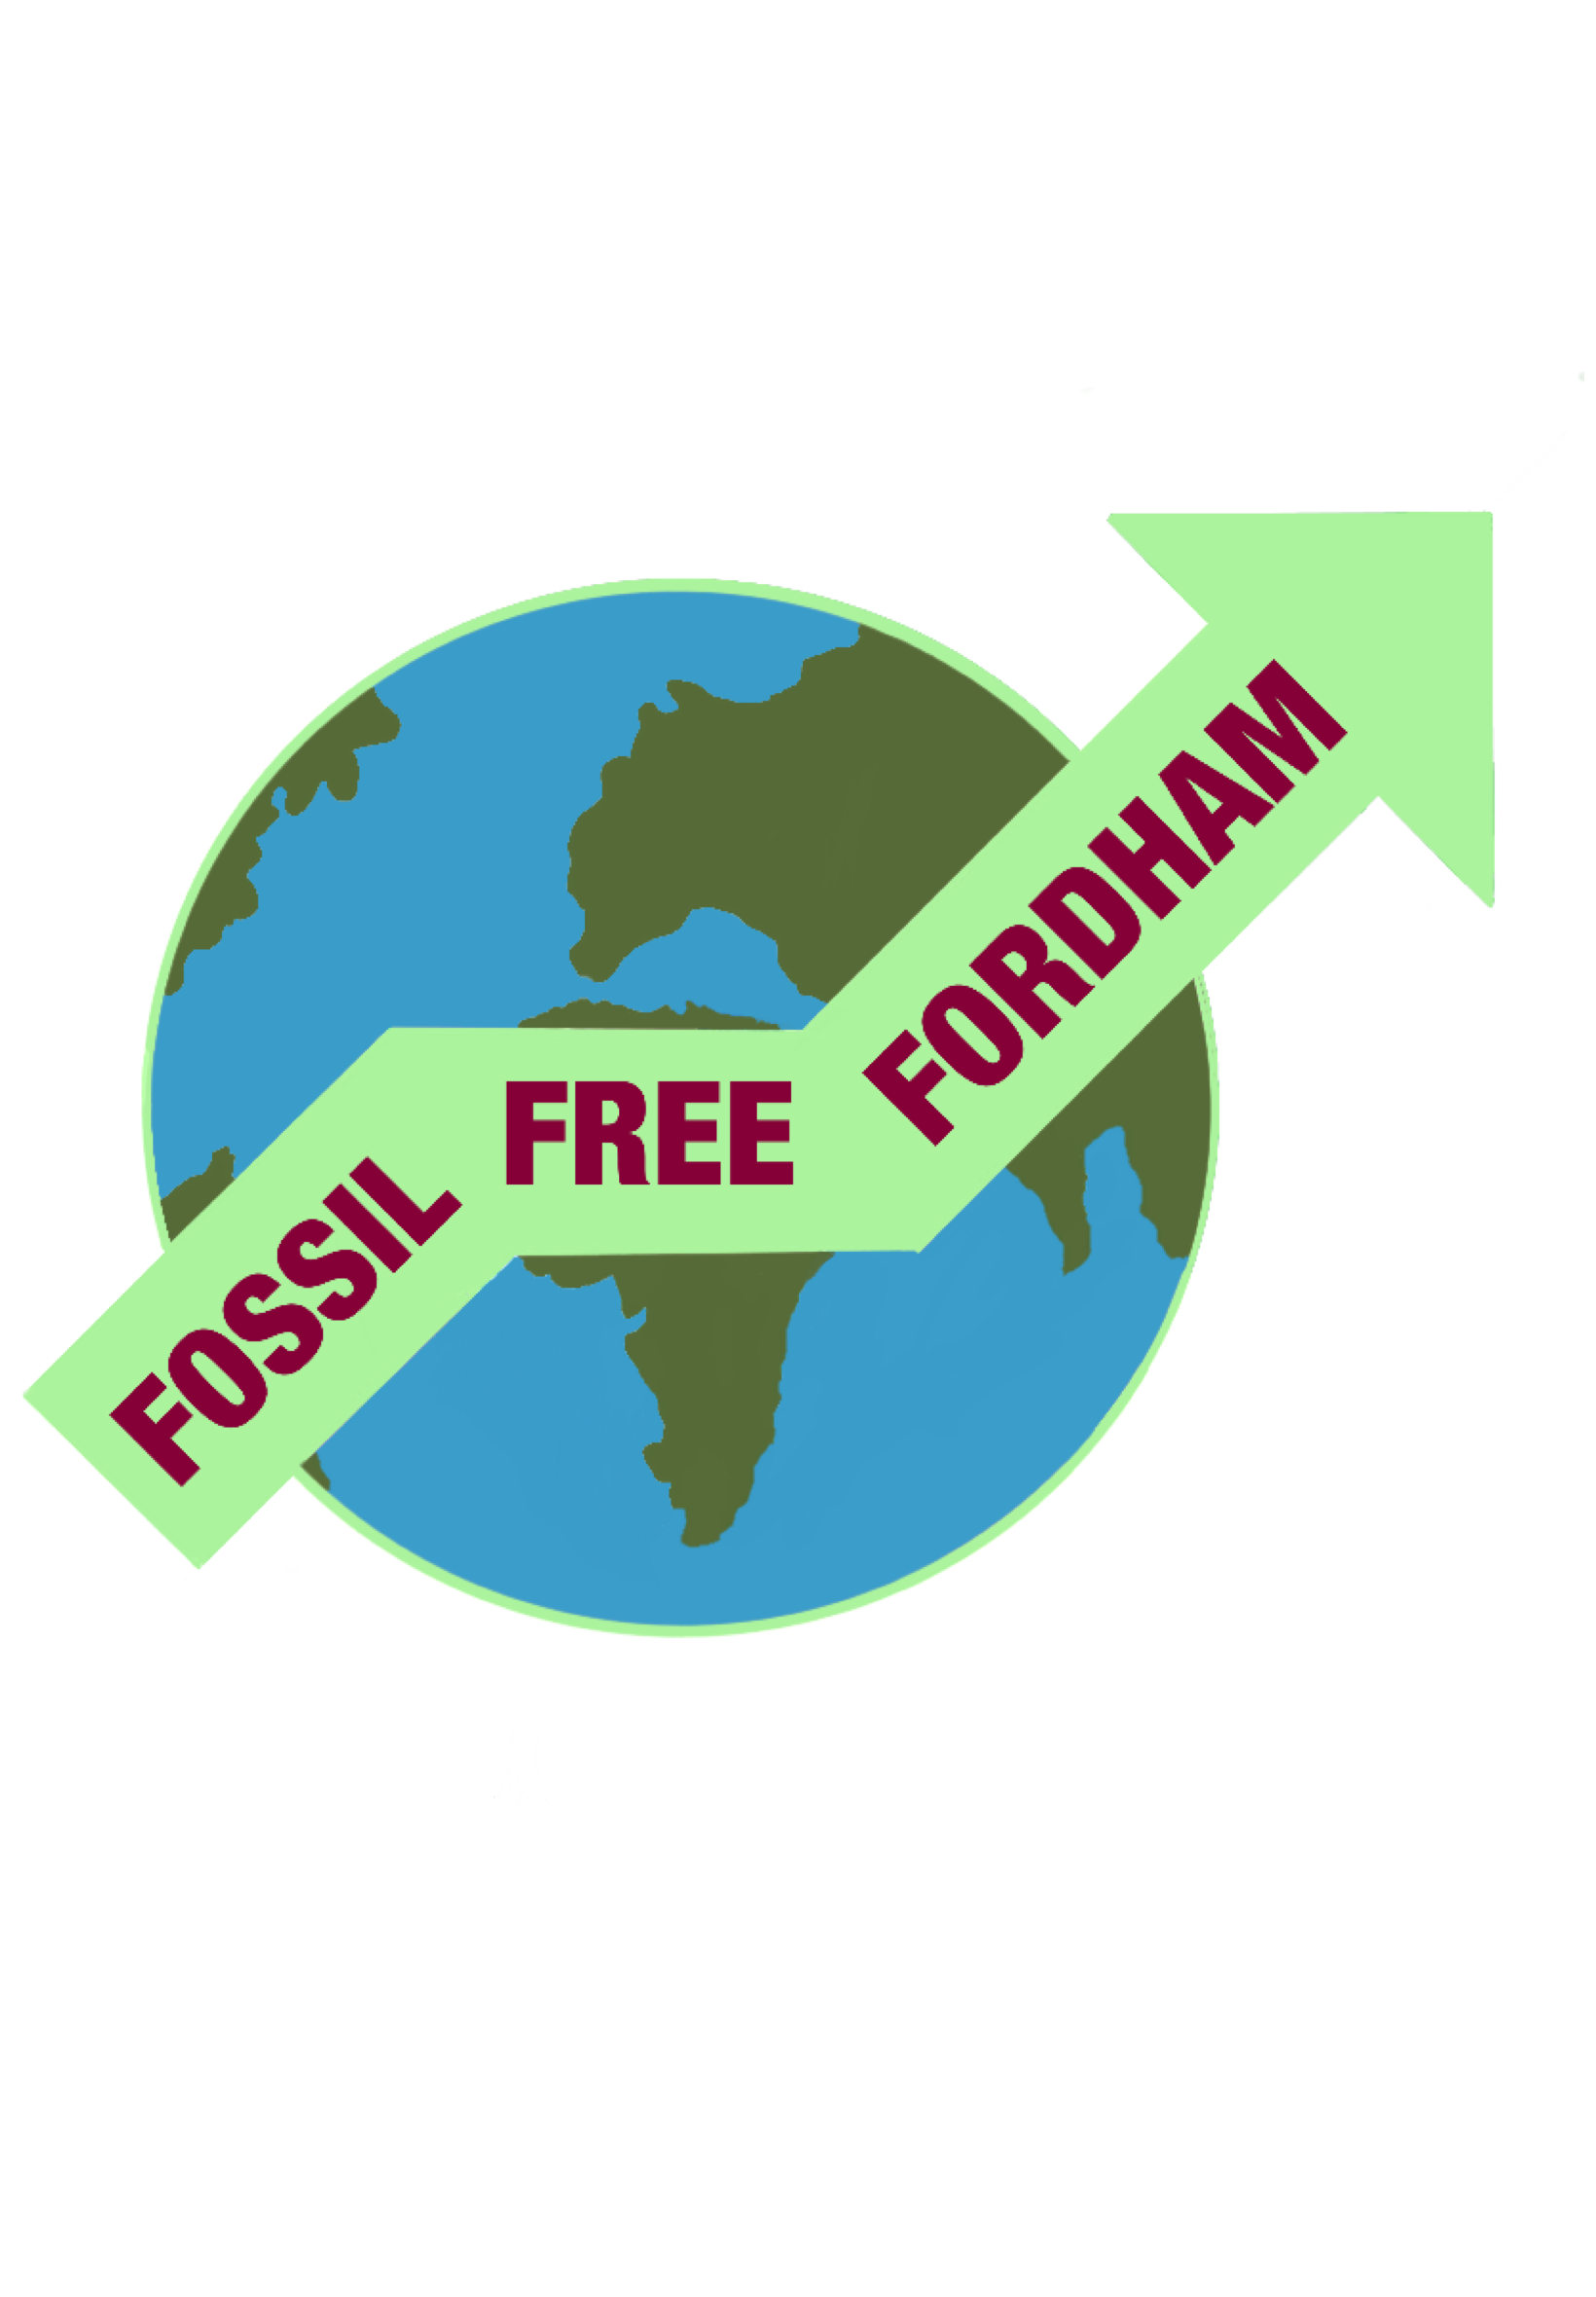 Fossil Free Fordham